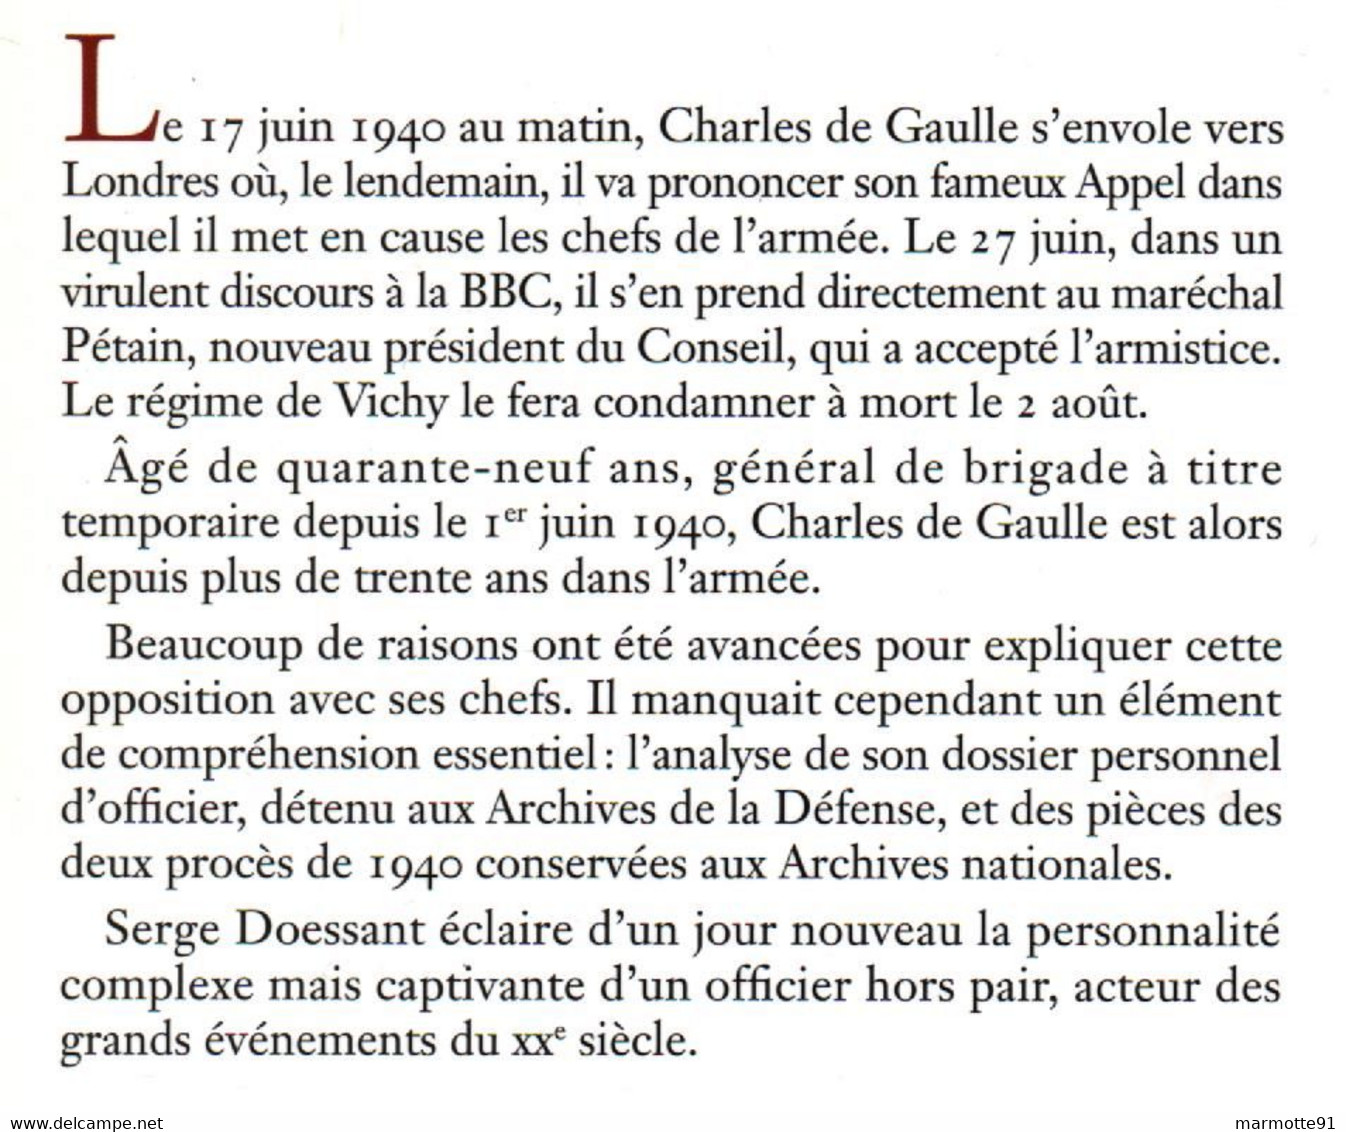 L OFFICIER CHARLES DE GAULLE ET SES CHEFS  PAR S. DOESSANT - Français